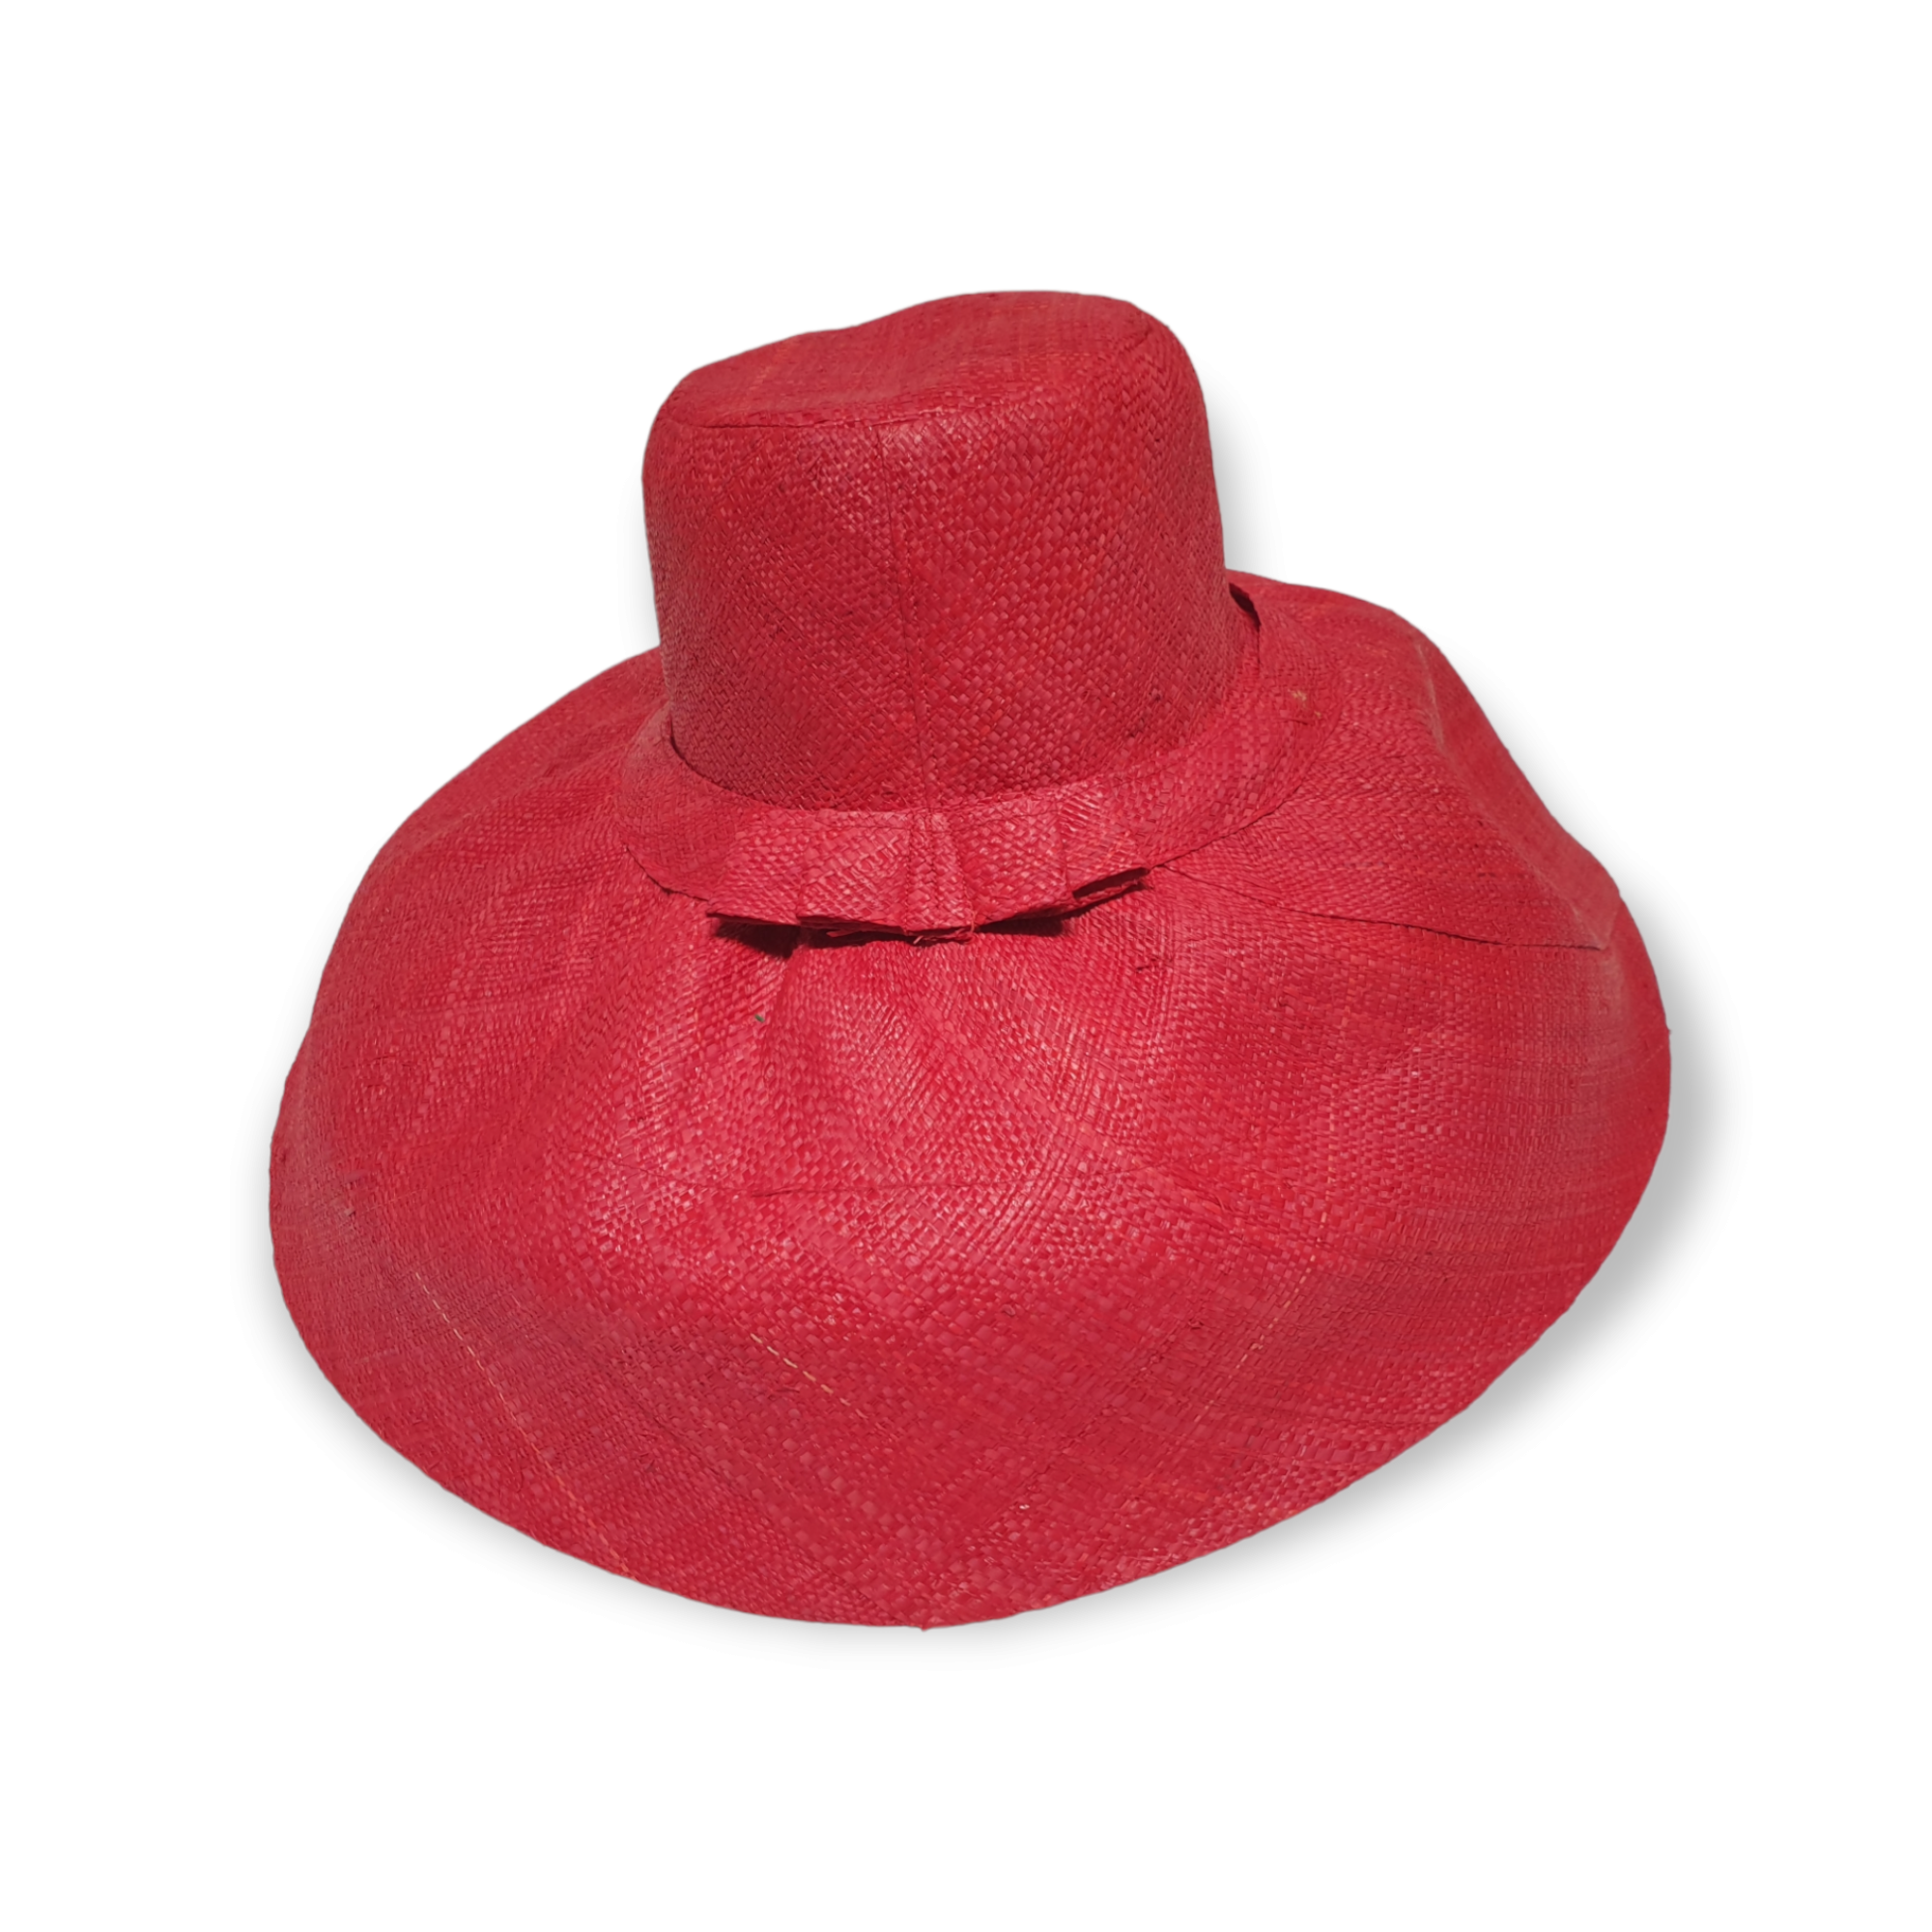 Strå hatt i knall rød med sløyfe detalj